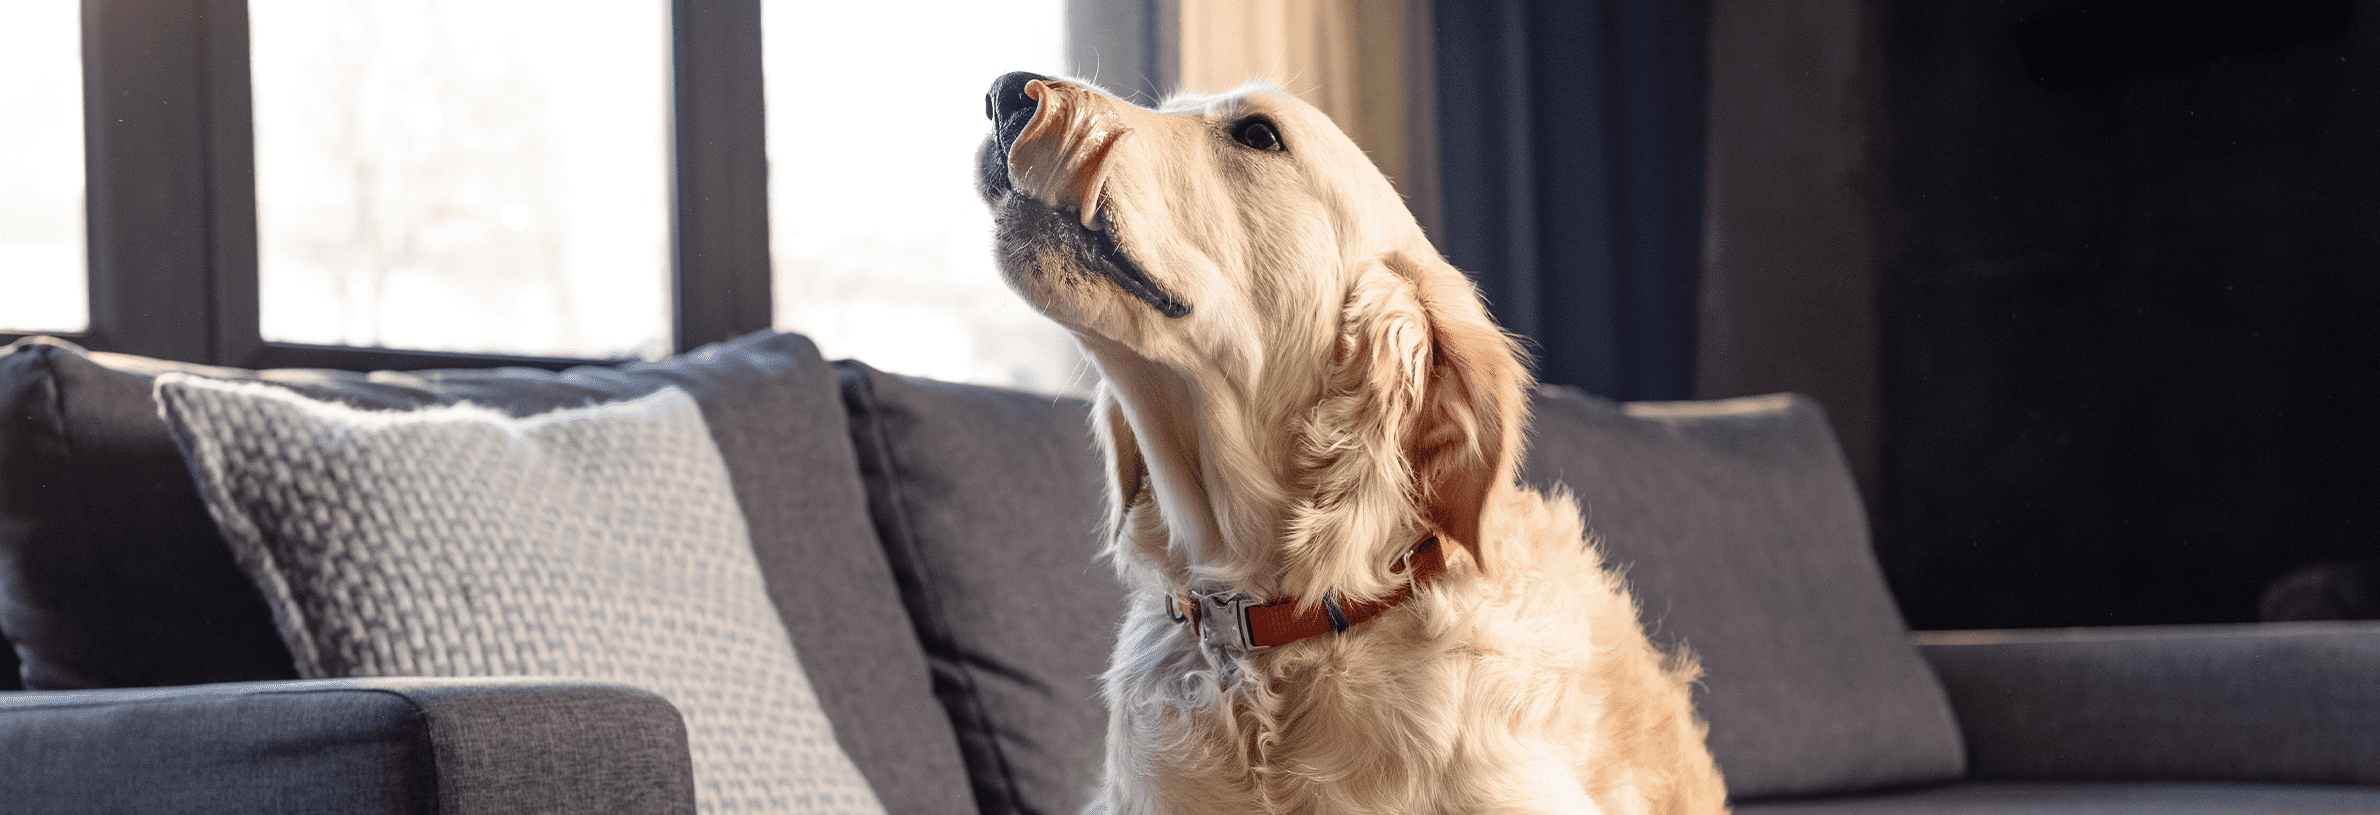 kennelhoest bij honden